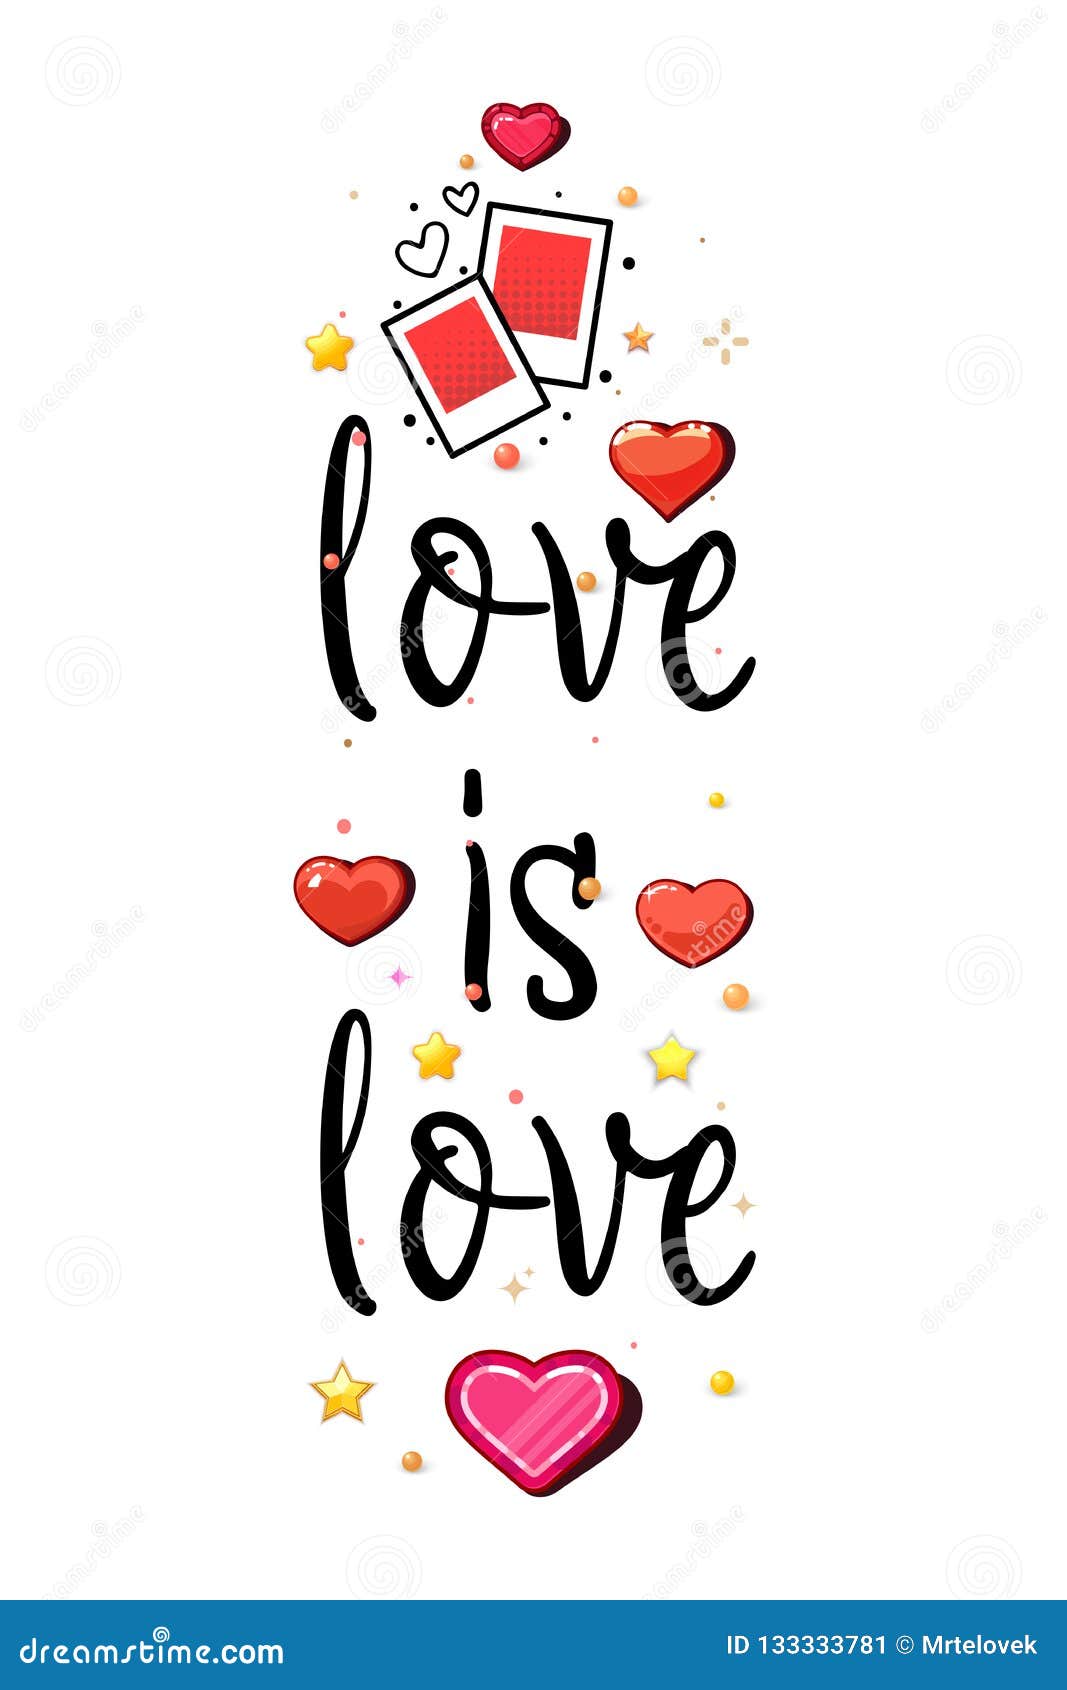 Slogan tình yêu của chúng tôi trong ngày lễ Valentine sẽ đem lại một khái niệm lãng mạn cho cuộc sống của bạn. Hãy để điểm nhấn này thể hiện tình cảm của bạn đến người được yêu thương.